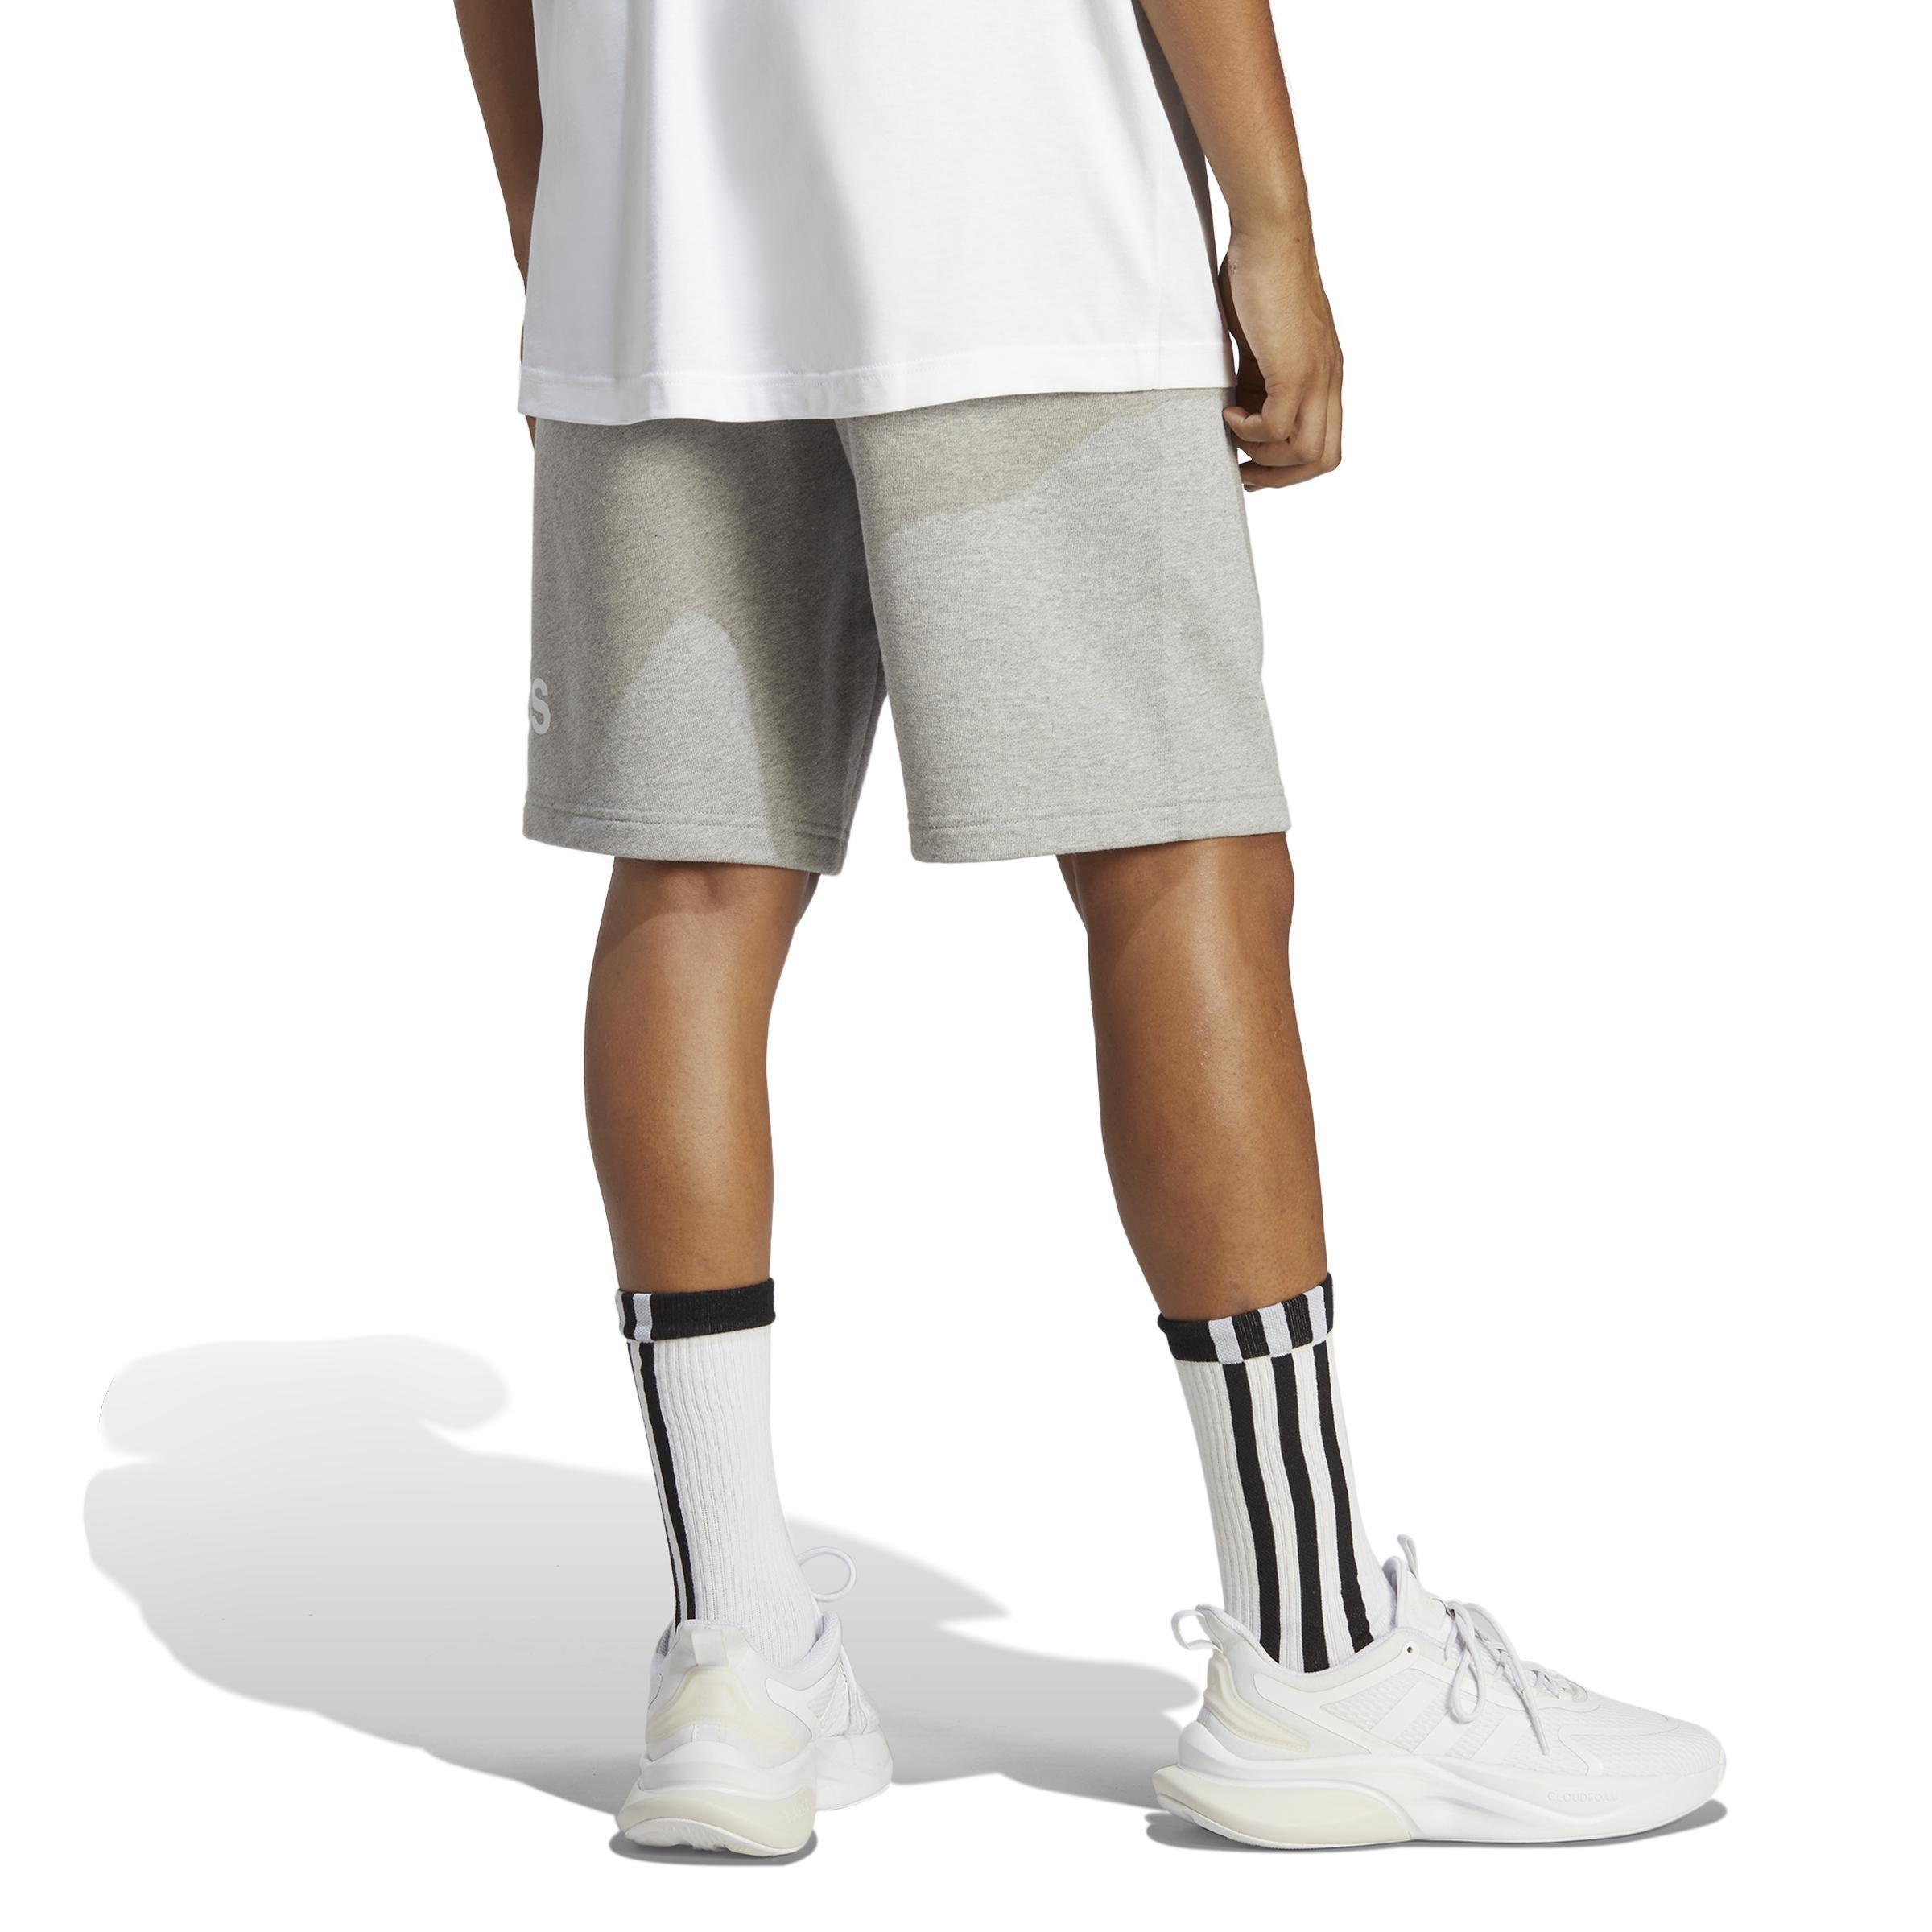 adidas - Men Essentials Big Logo French Terry Shorts, Grey